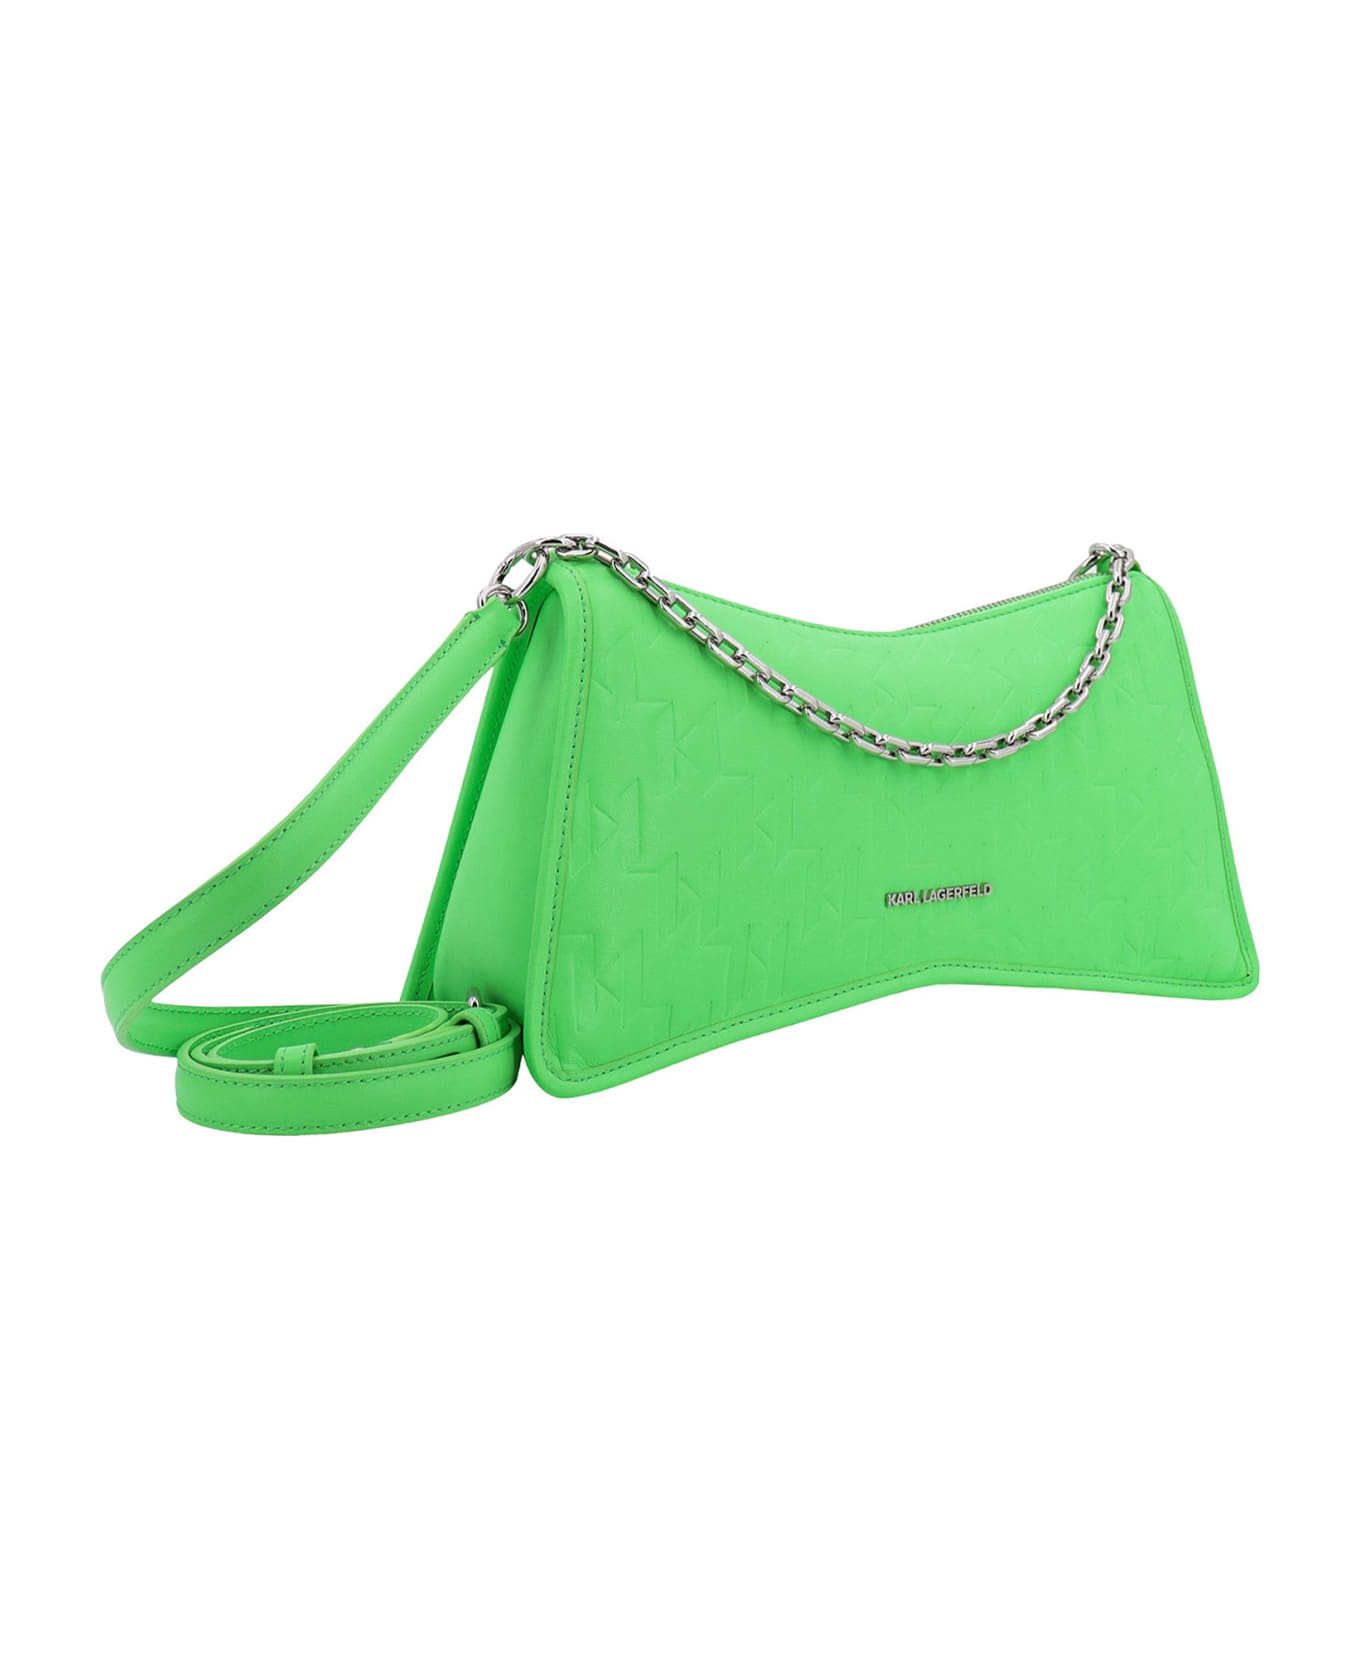 Karl Lagerfeld Shoulder Bag - Green